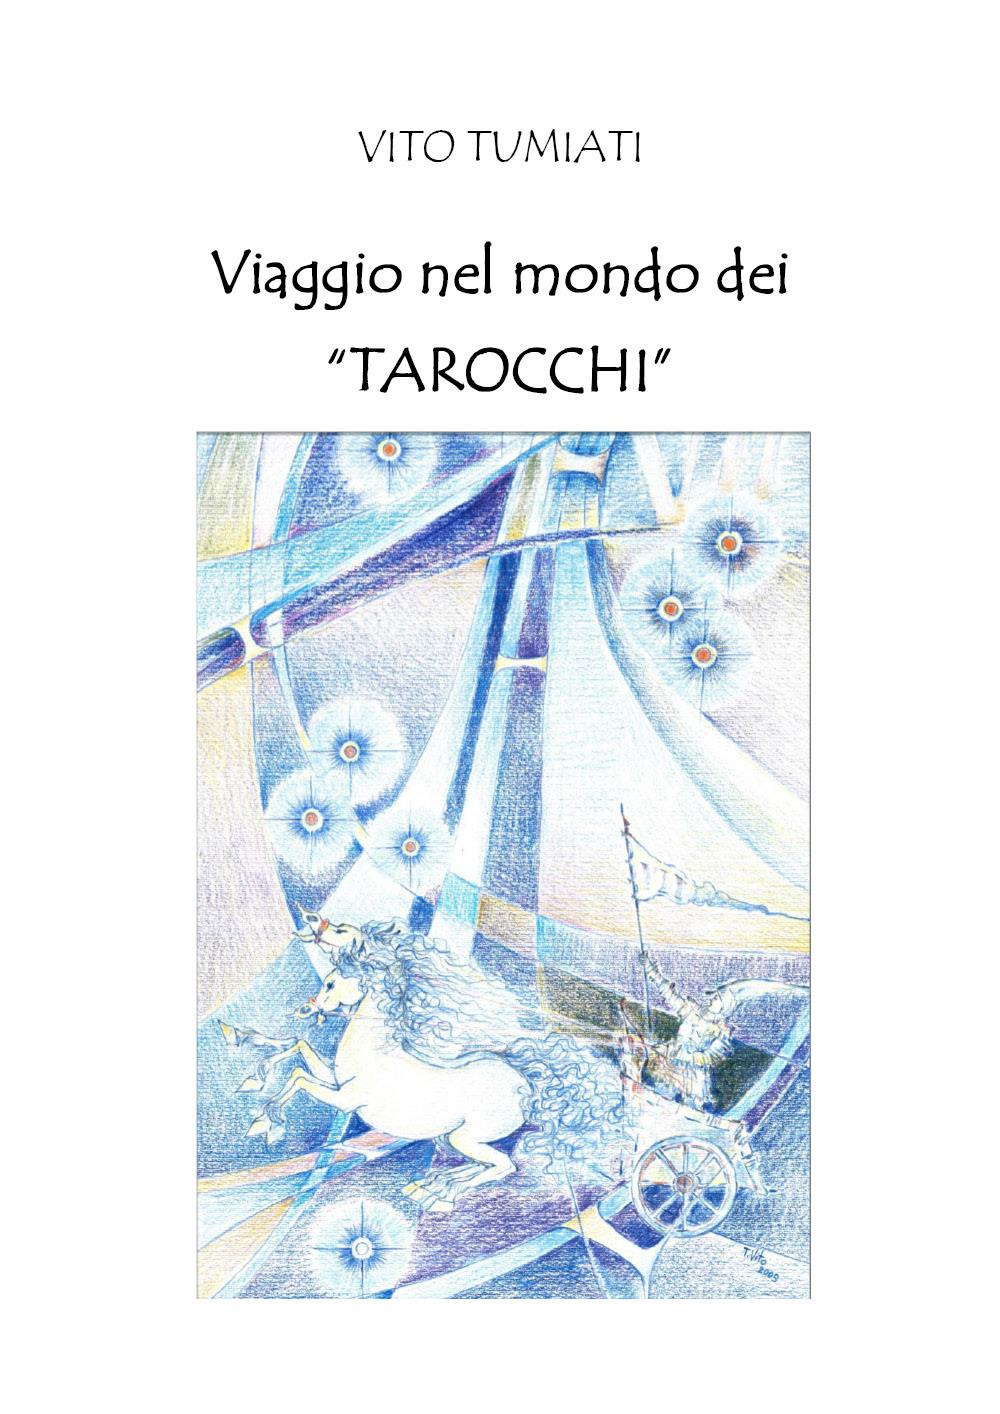 Libri Tumiati Vito - Viaggio Nel Mondo Dei Tarocchi NUOVO SIGILLATO, EDIZIONE DEL 07/02/2023 SUBITO DISPONIBILE